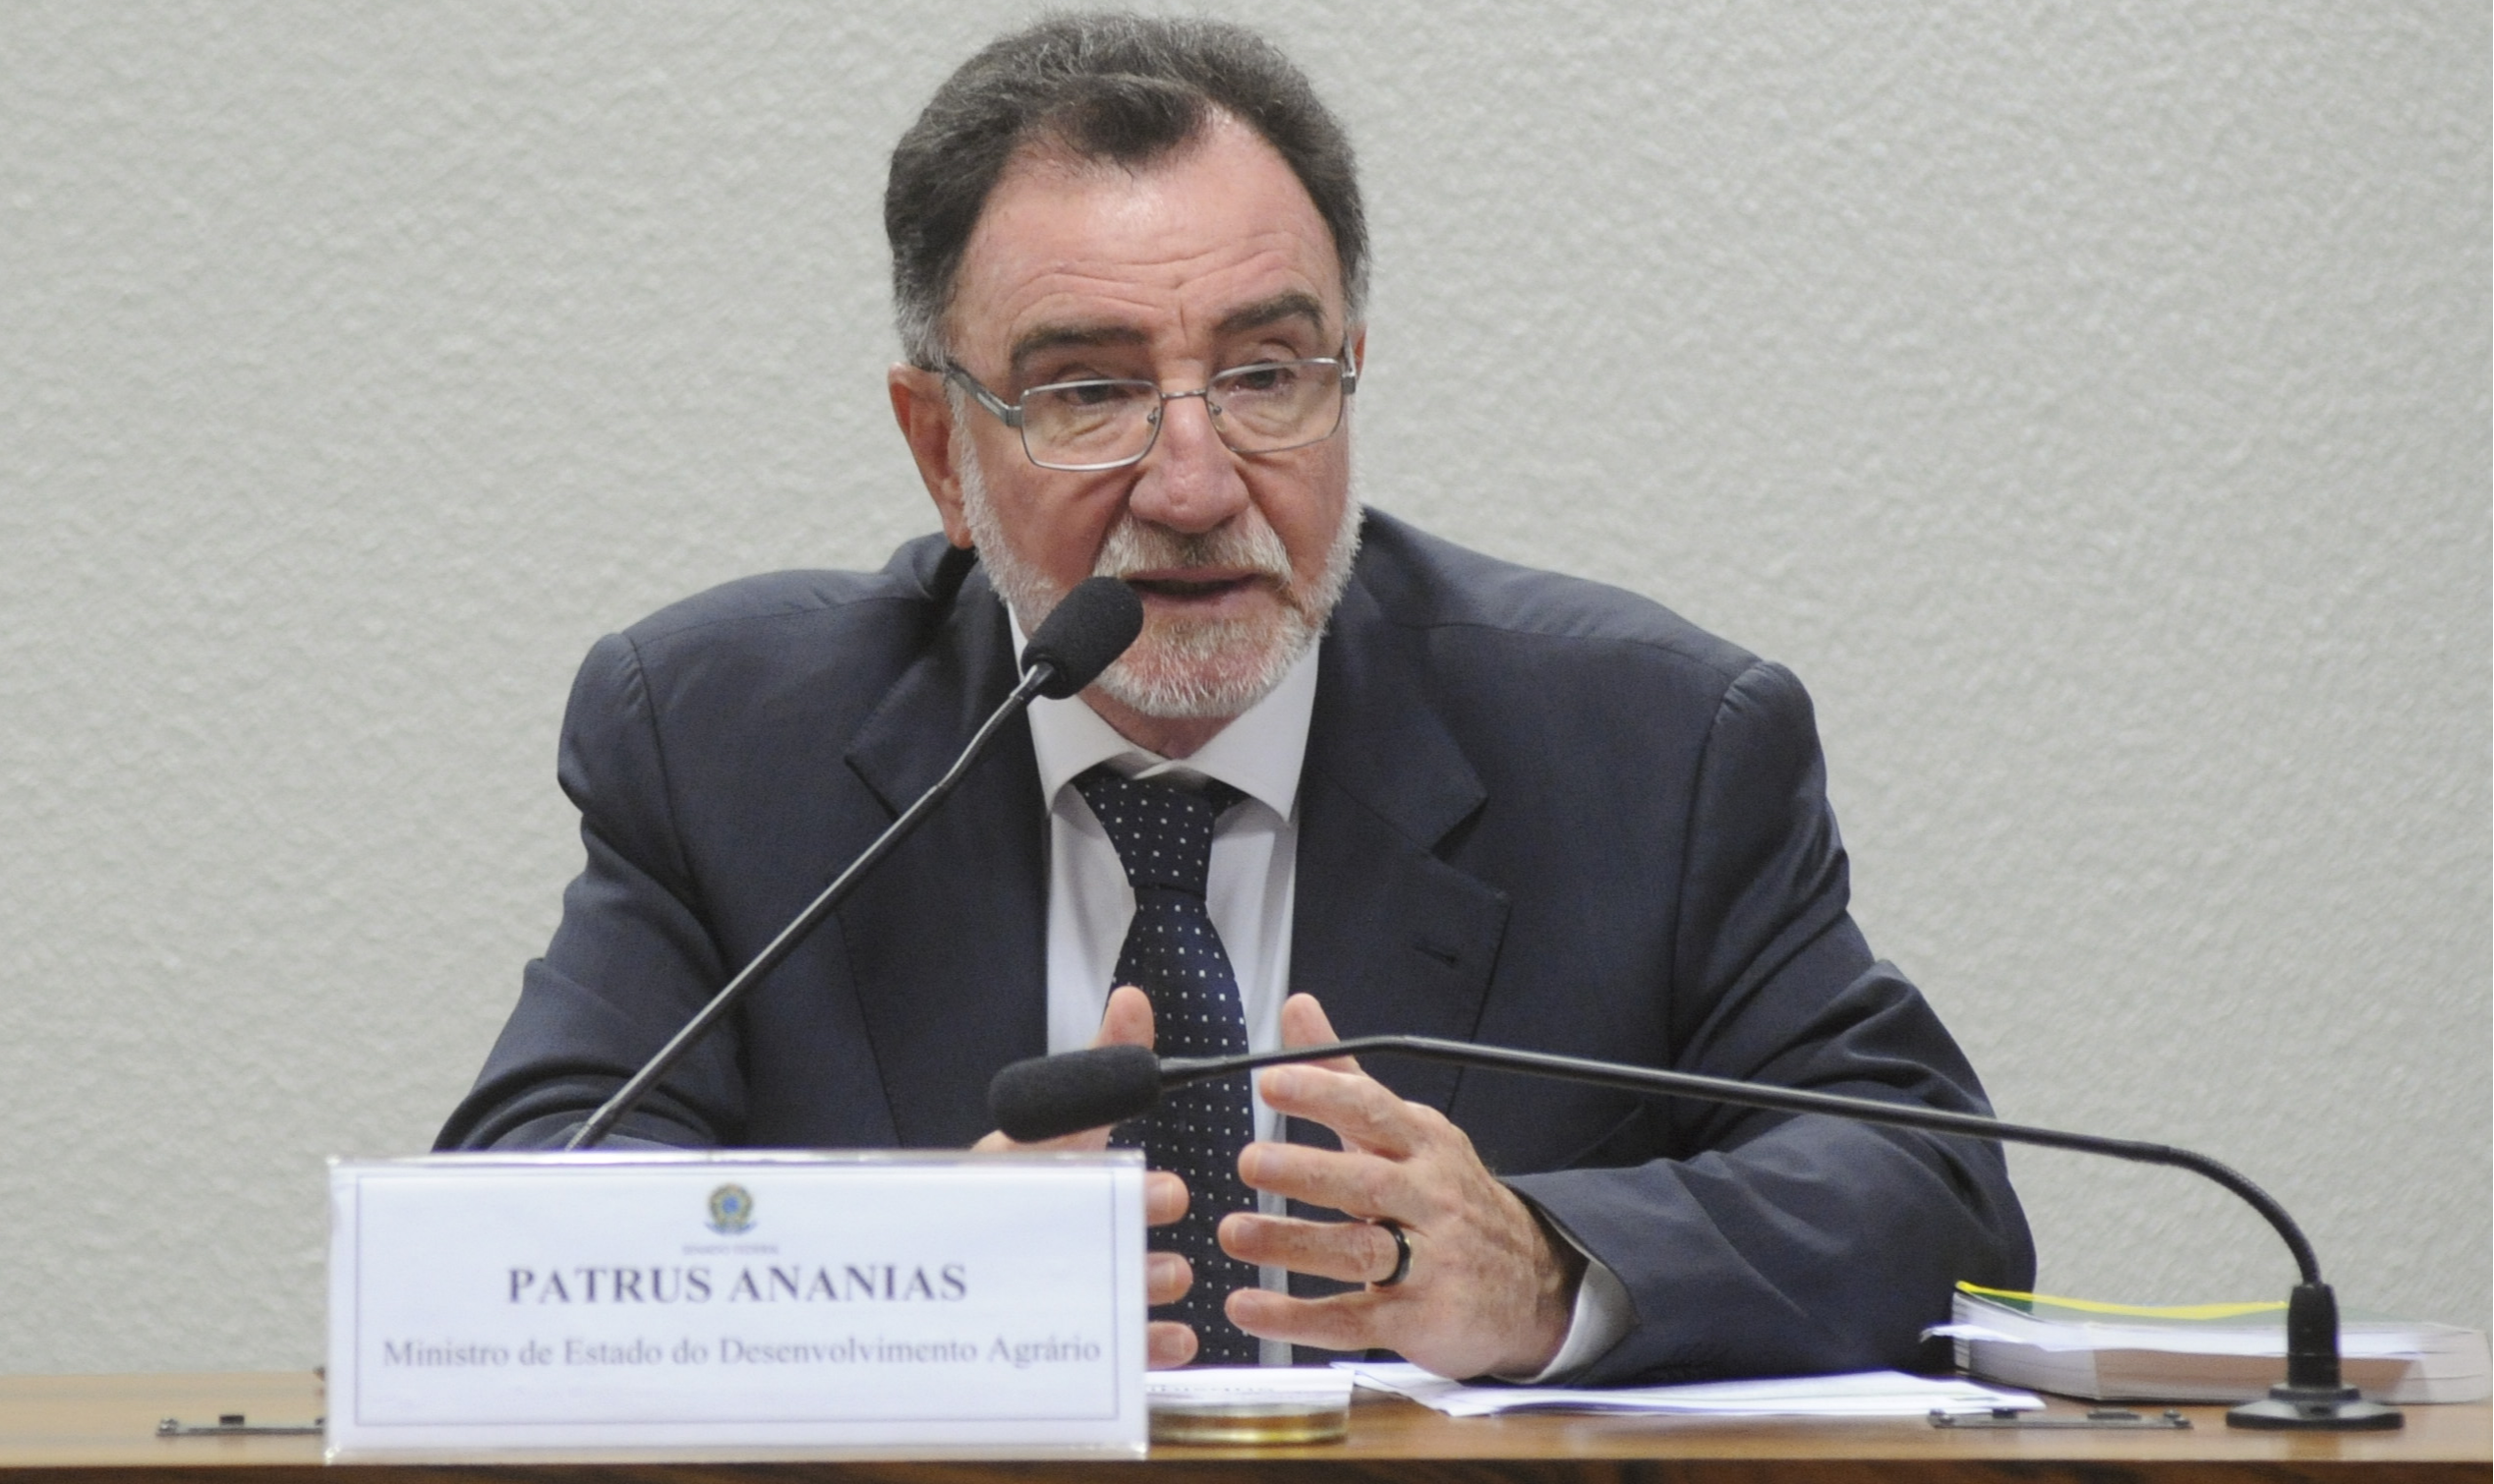 Deputado Patrus Ananias alerta para a necessidade de mais informação e ações integradas entre setor público, privado e sociedade para enfrentar a pandemia